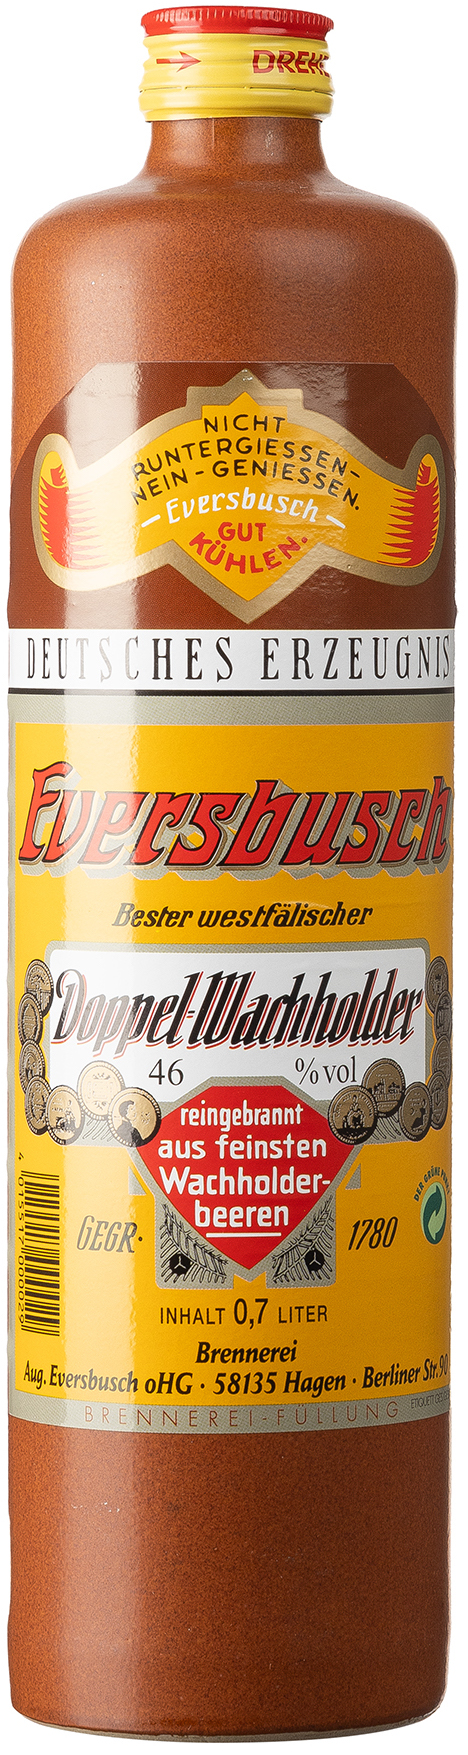 Eversbusch Doppelwachholder 46% vol. 0,7L